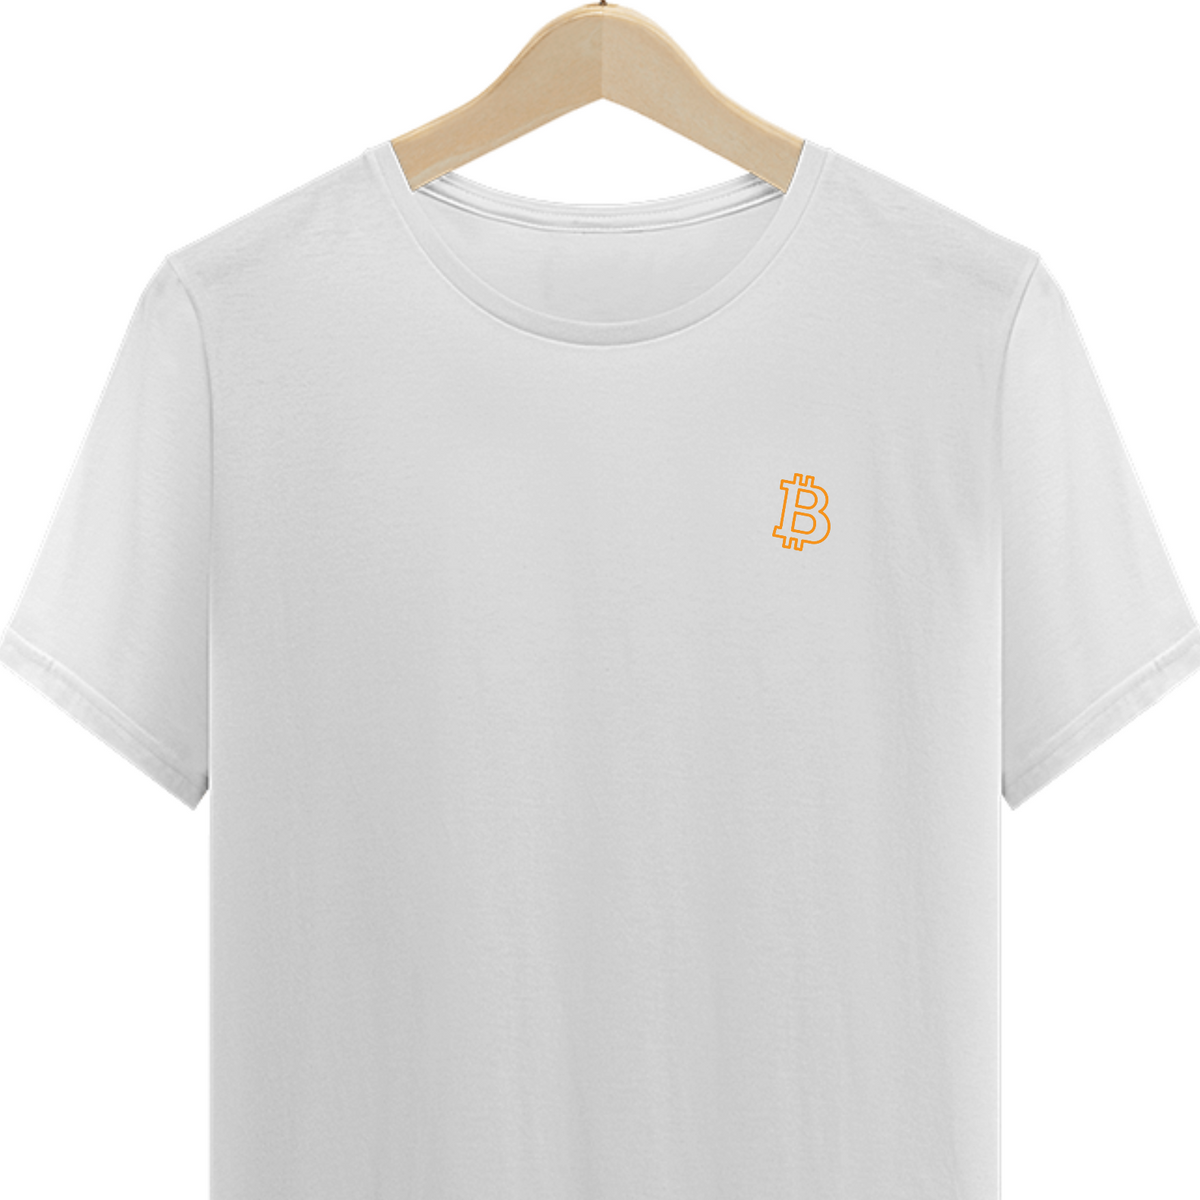 Nome do produto: T-Shirt Classic BTC Minimal